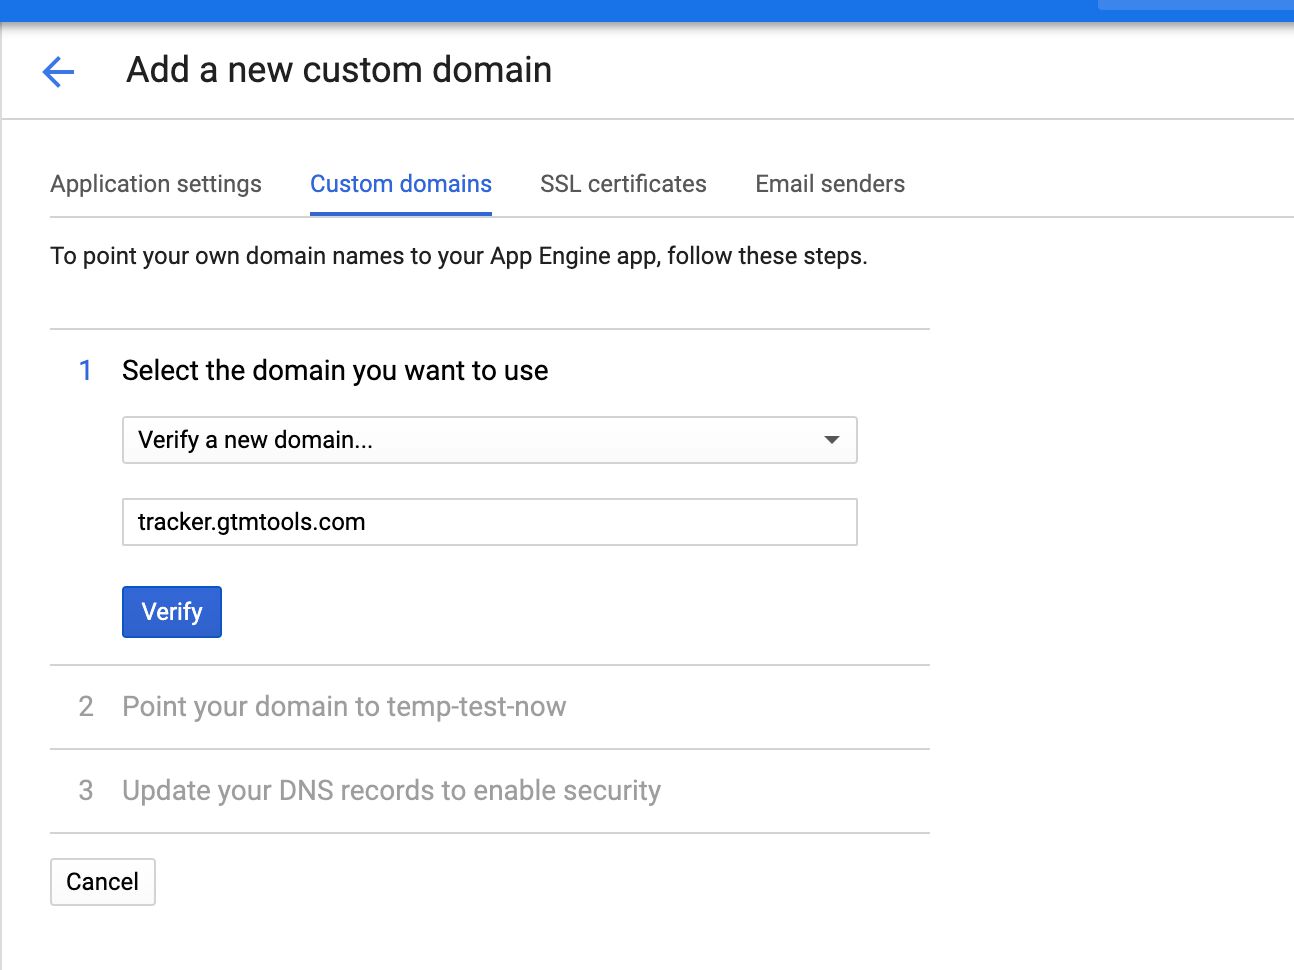 Verify new domain